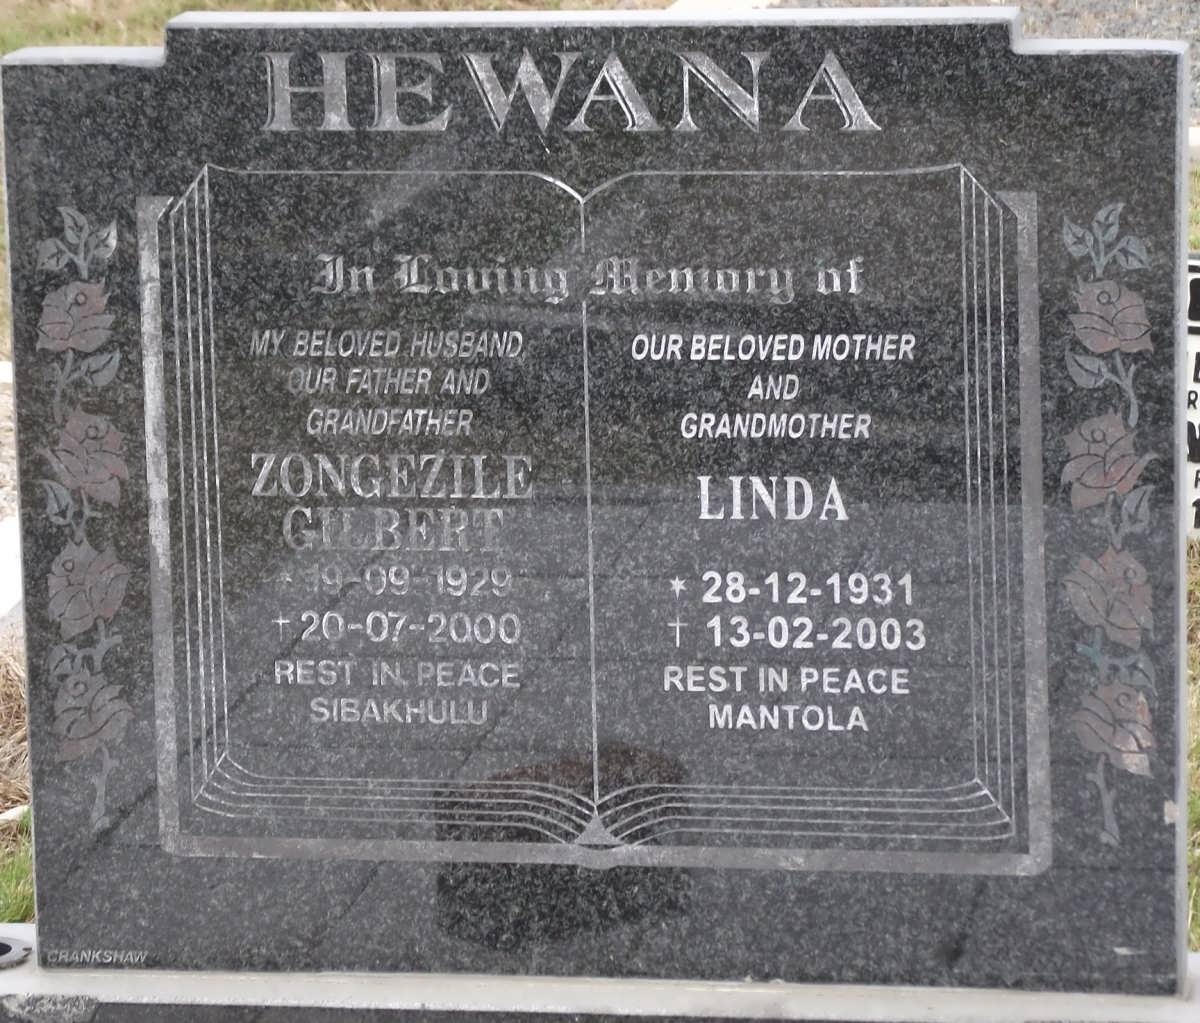 HEWANA Zongezile Gilbert 1929-2000 & Linda 1931-2003